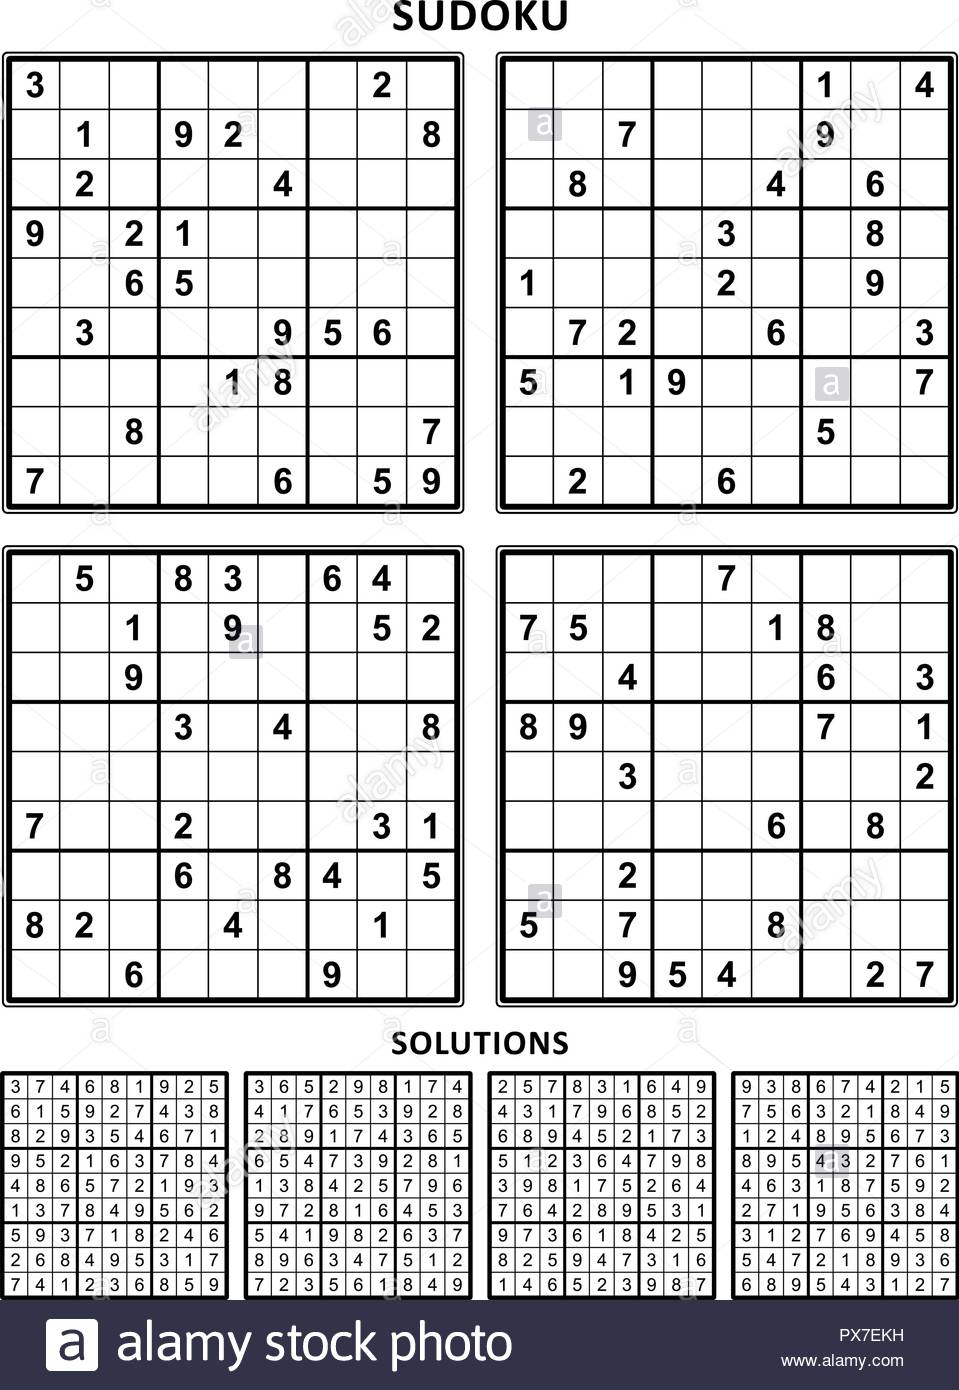 Sudoku Printable Answers